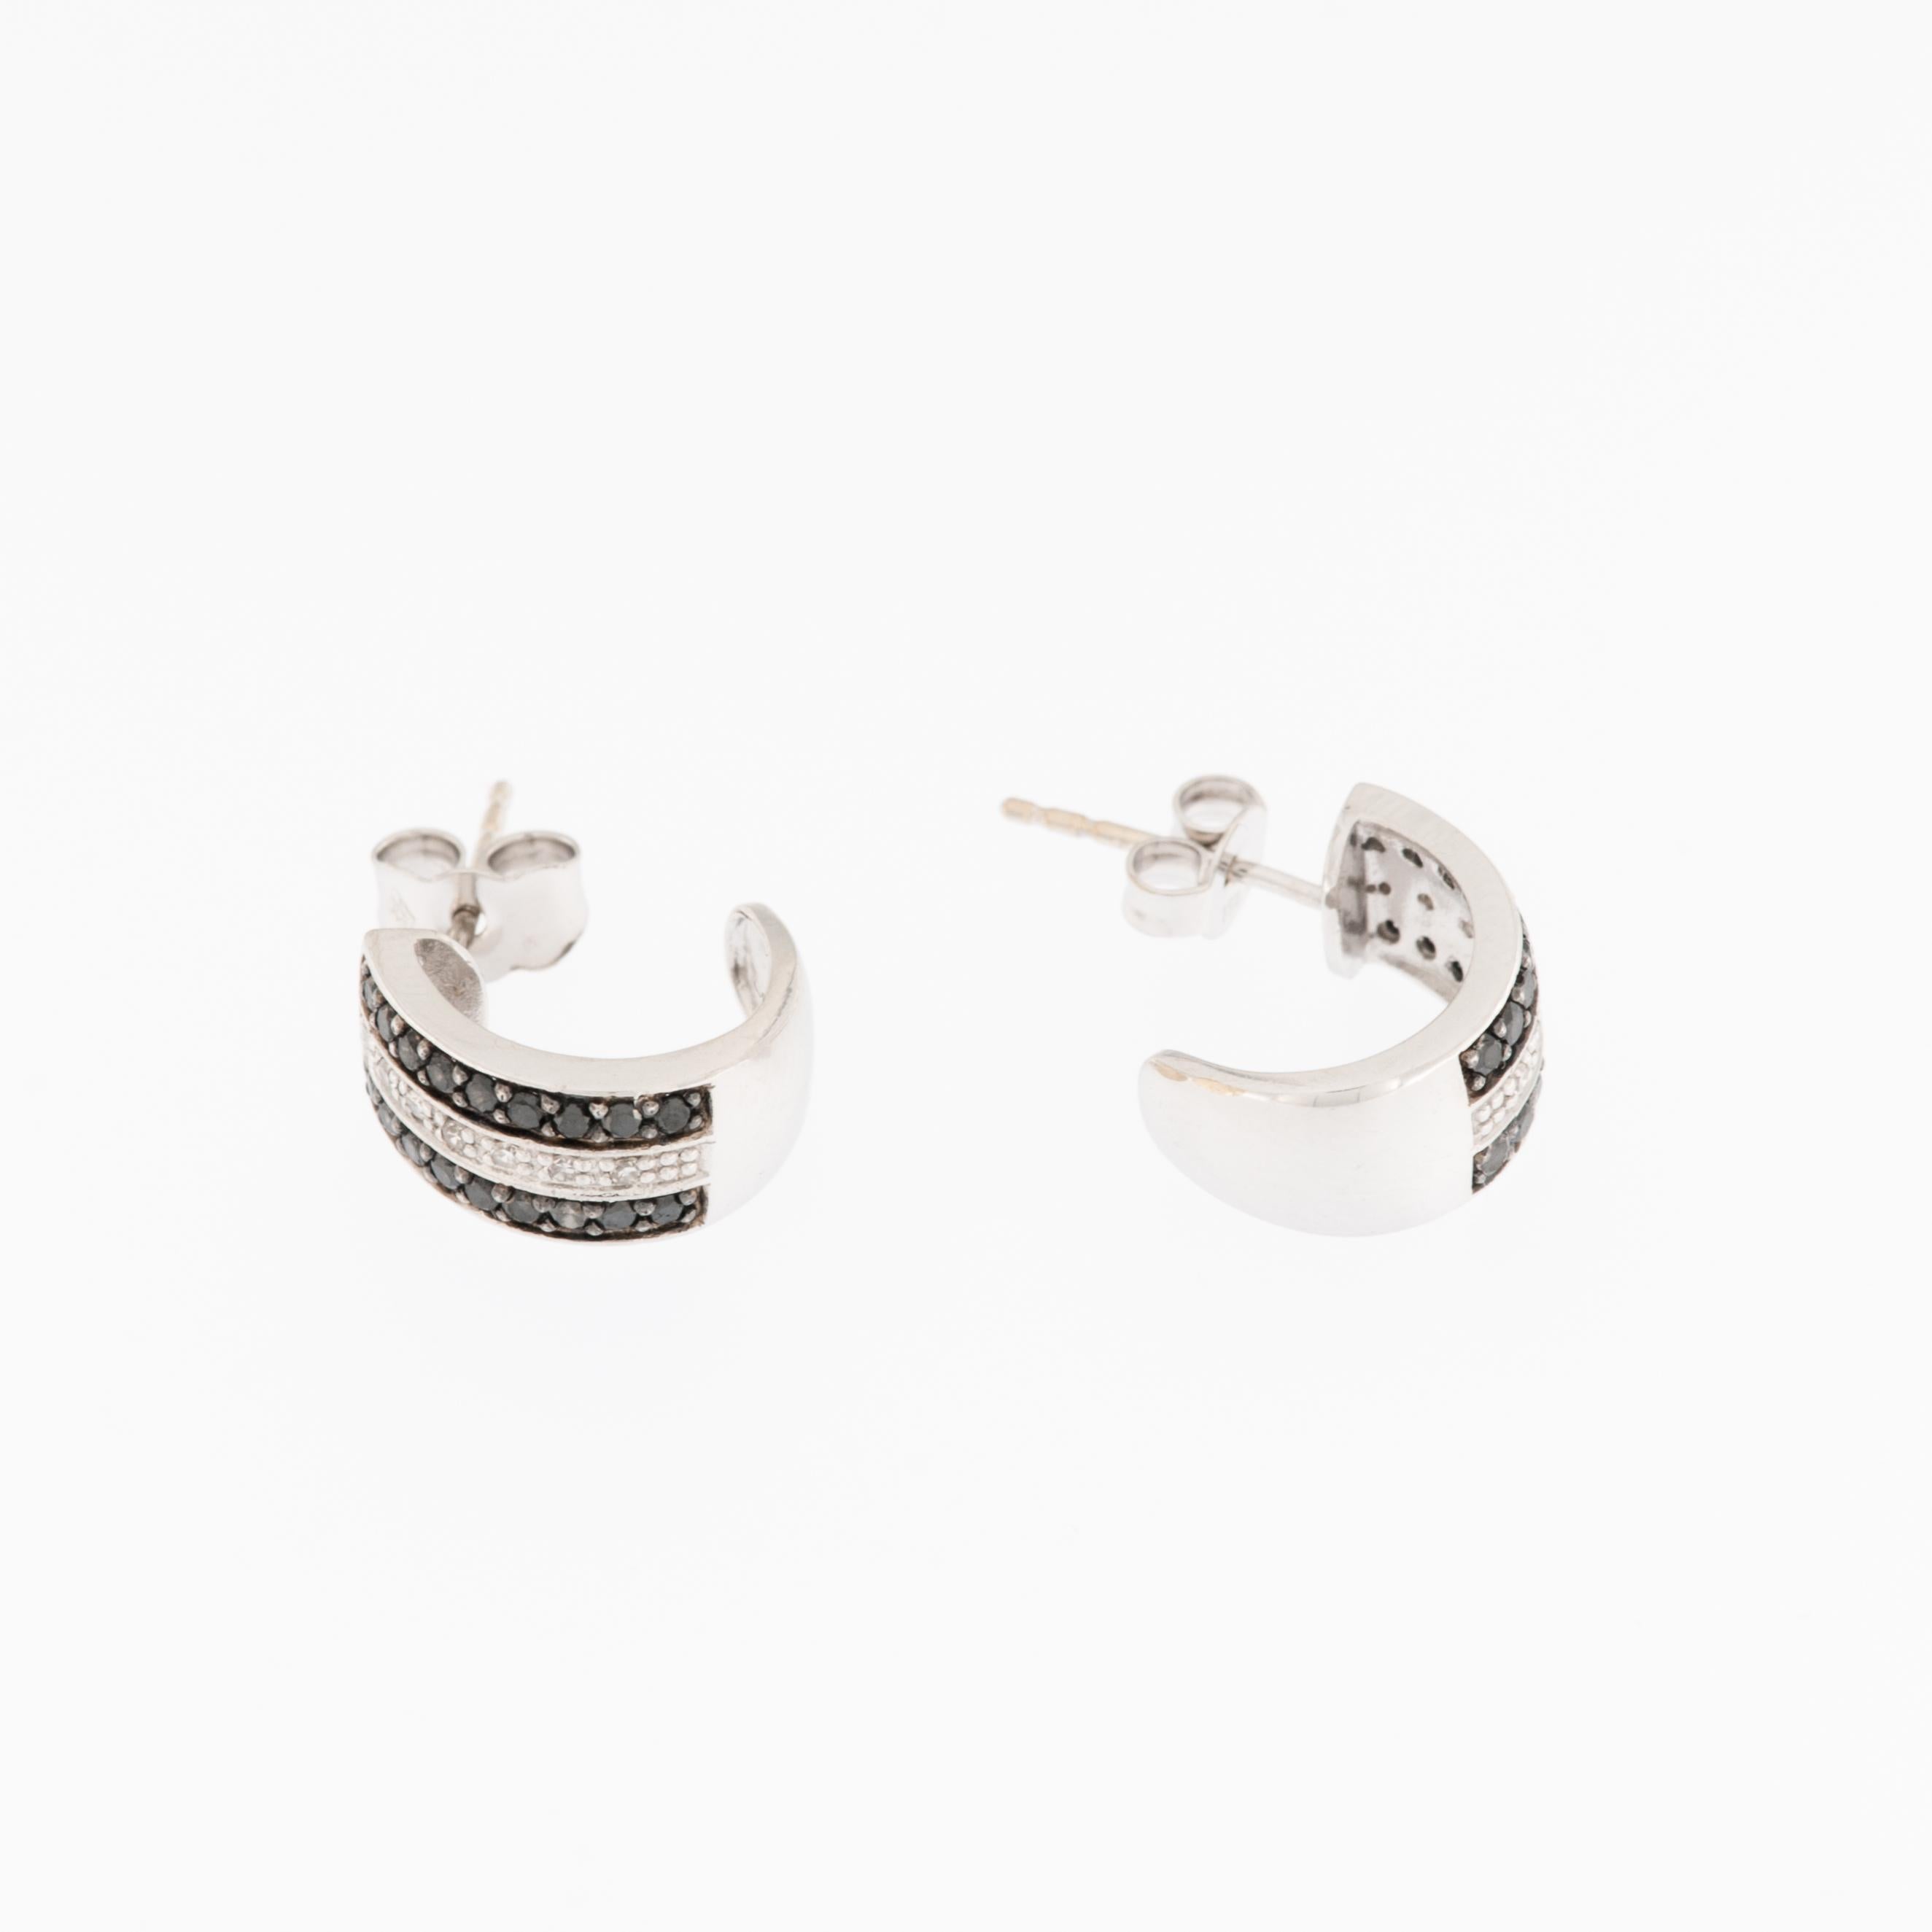 Ces boucles d'oreilles en diamants noirs et blancs, or blanc 18KT, sont un merveilleux bijou conçu pour capter l'attention et l'élégance. 

Les boucles d'oreilles présentent une combinaison de diamants noirs et blancs, taillés en brillant pour un